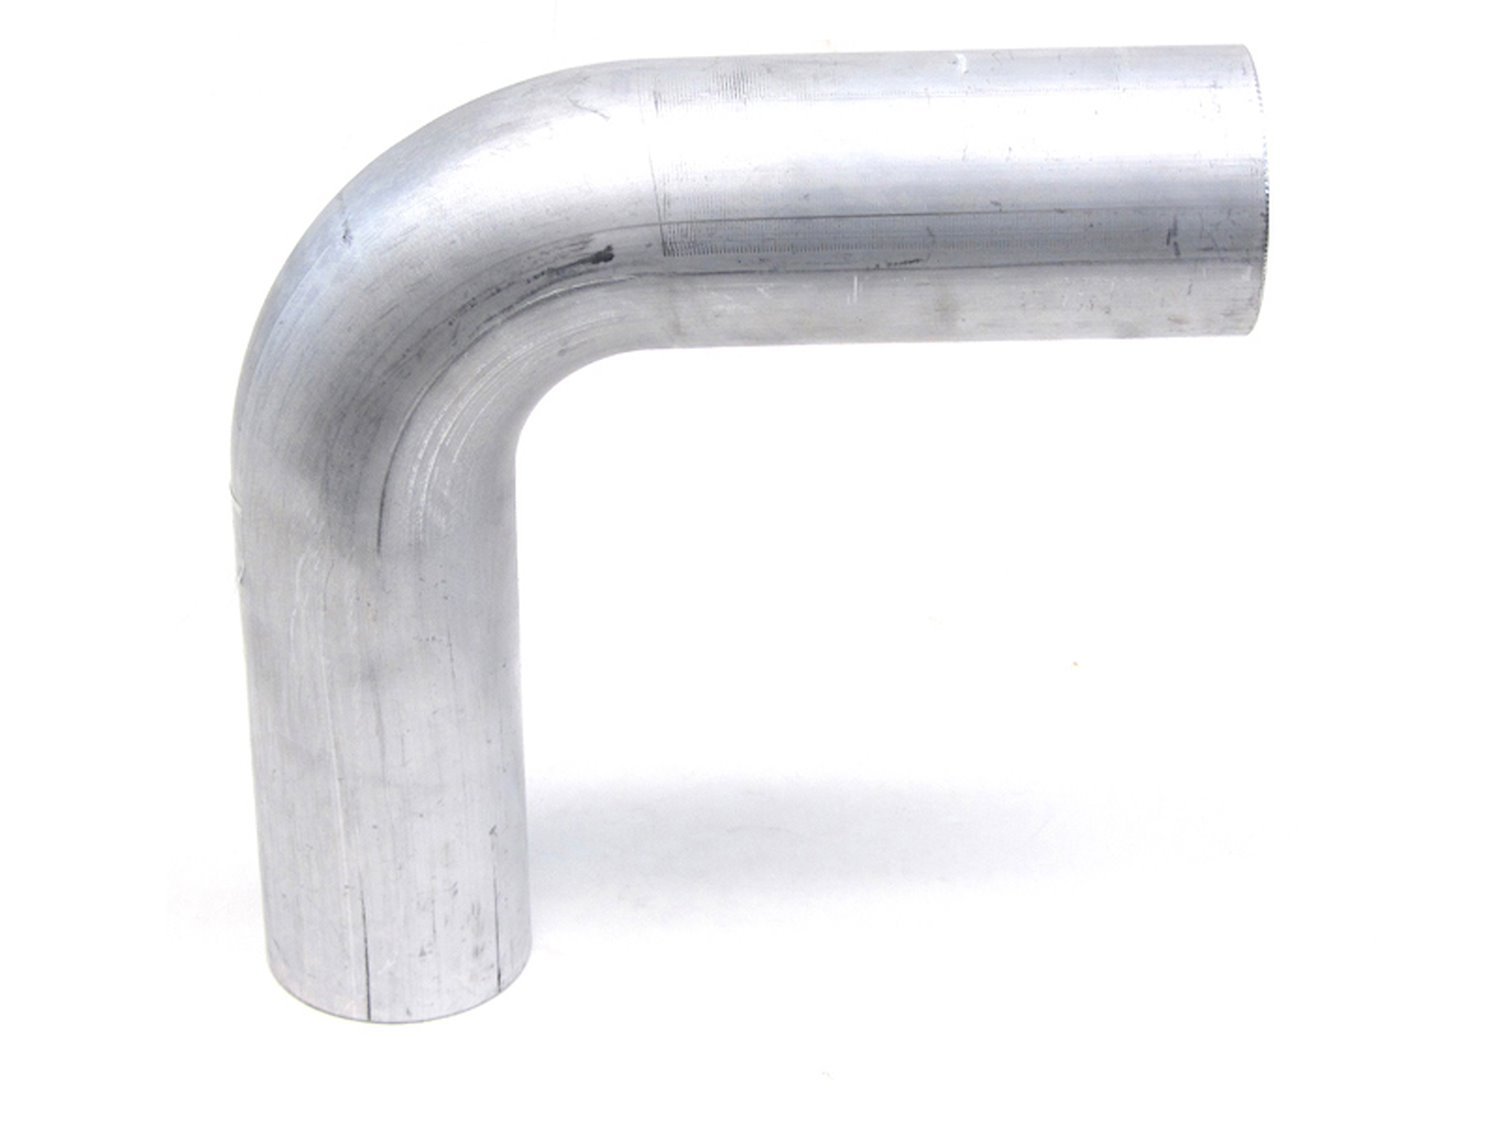 AT90-238-CLR-312 Aluminum Elbow Tube, 6061 Aluminum, 90-Degree Bend Elbow Tubing, 2 3/8 in. OD, Large Radius, 3 1/8 in. CLR